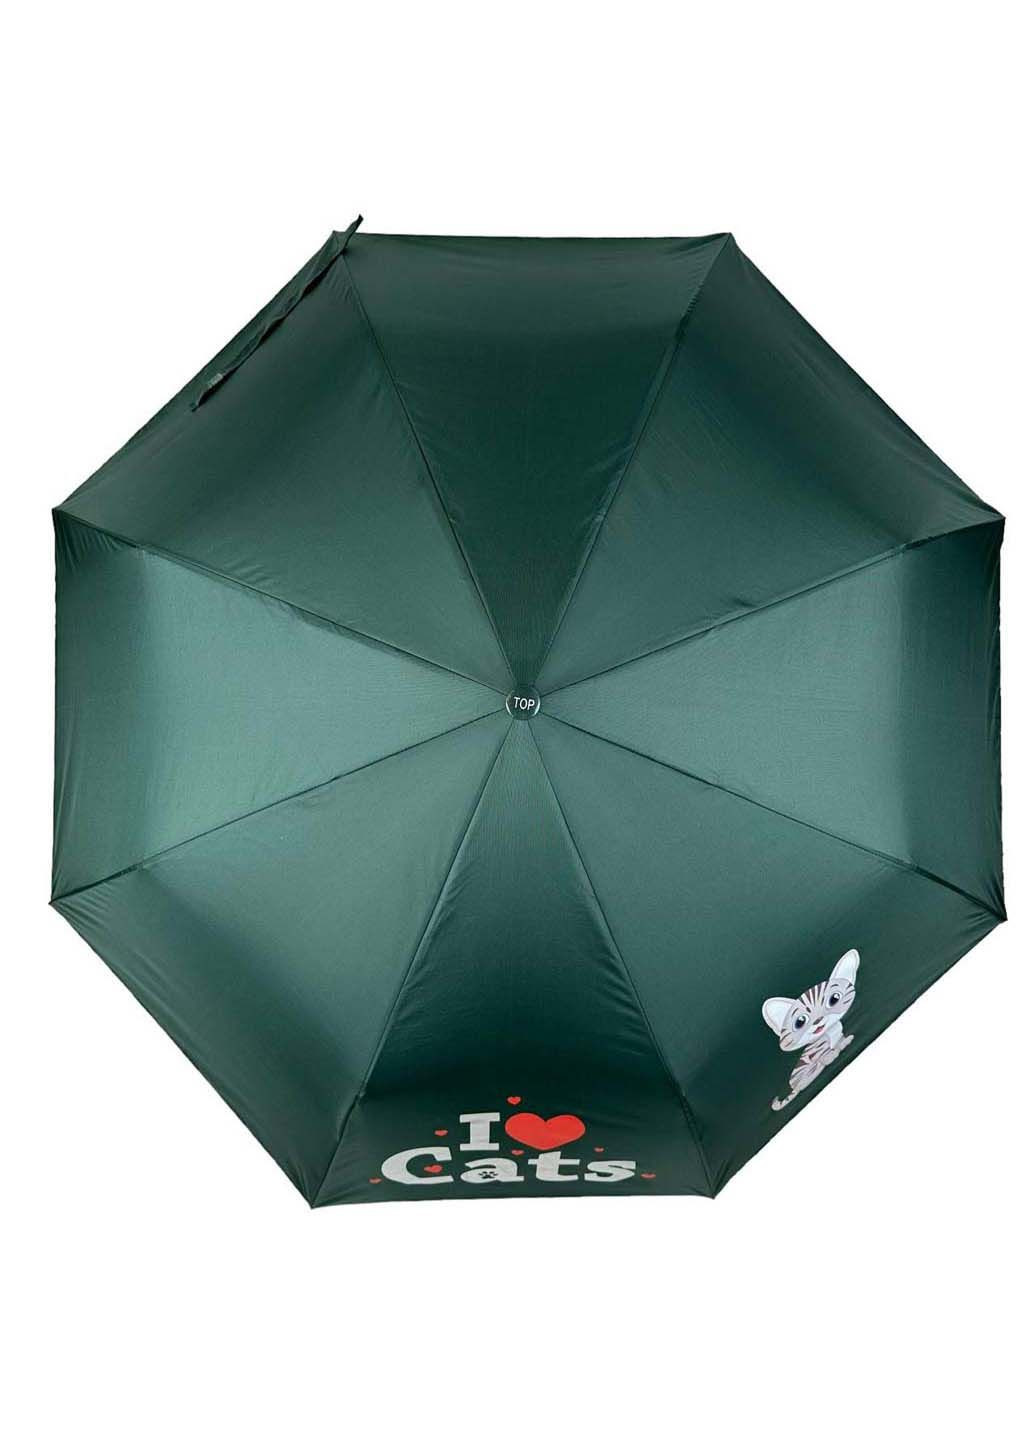 Детский складной зонт на 8 спиц "ICats" Toprain (289977346)